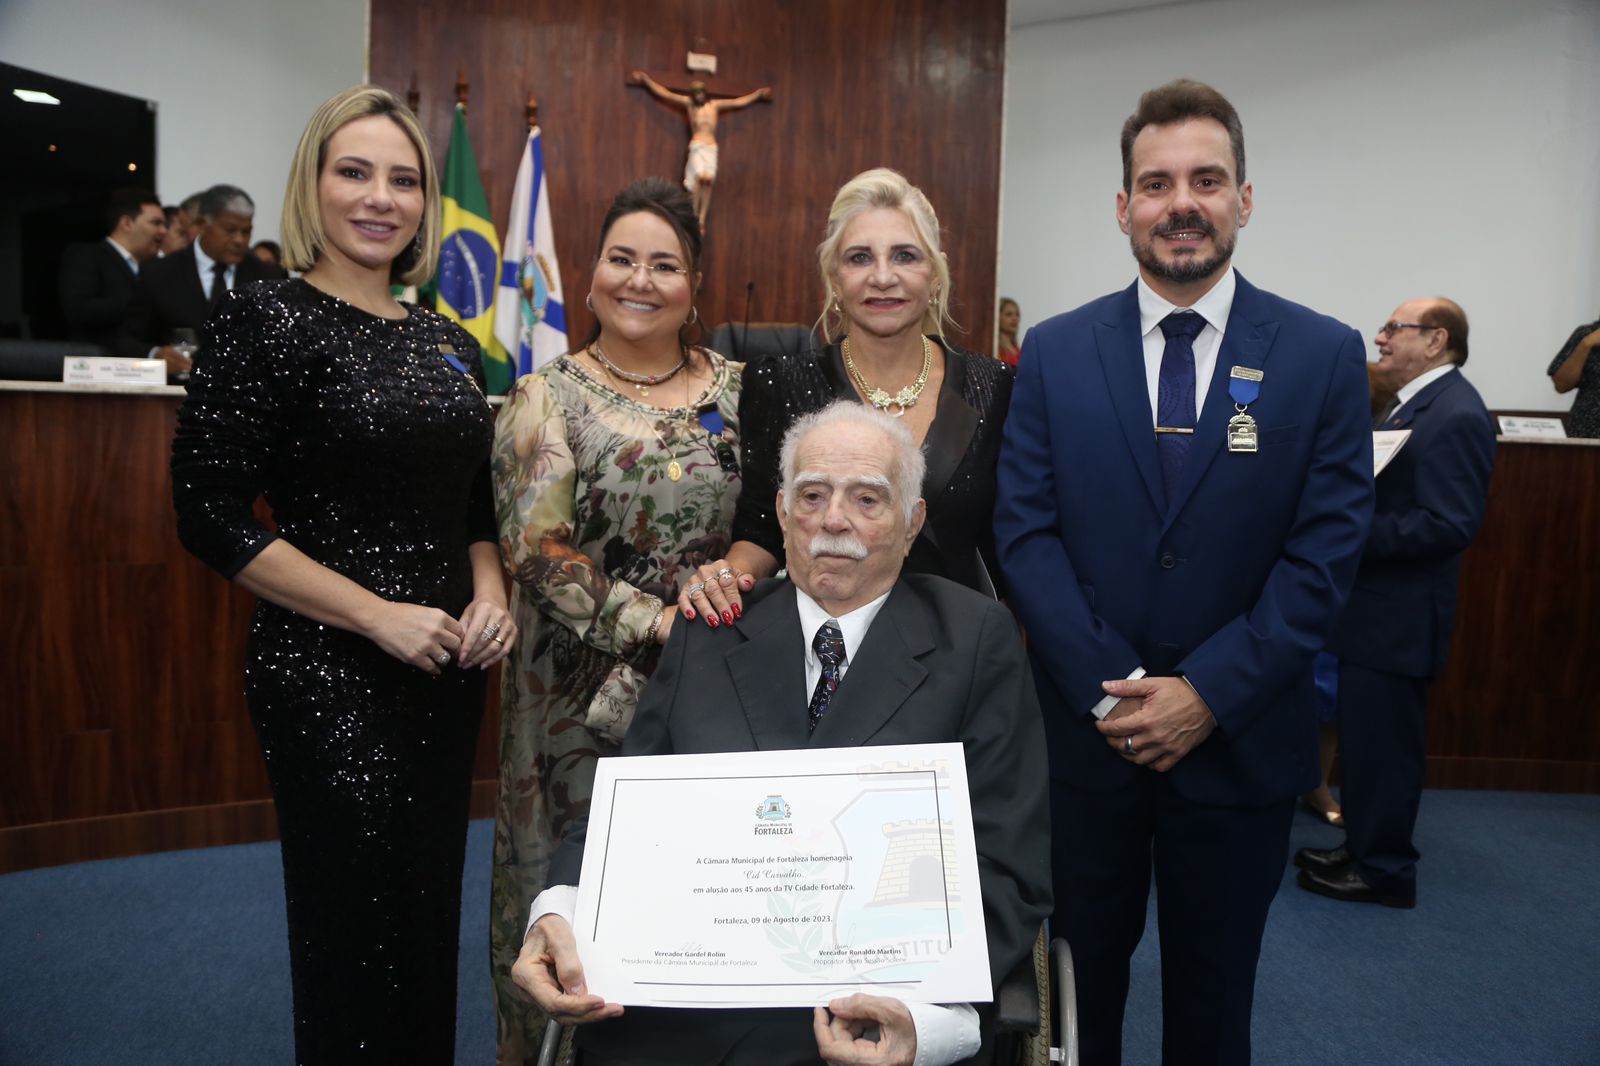 noticia TV Cidade recebeu homenagem na Câmara de Fortaleza